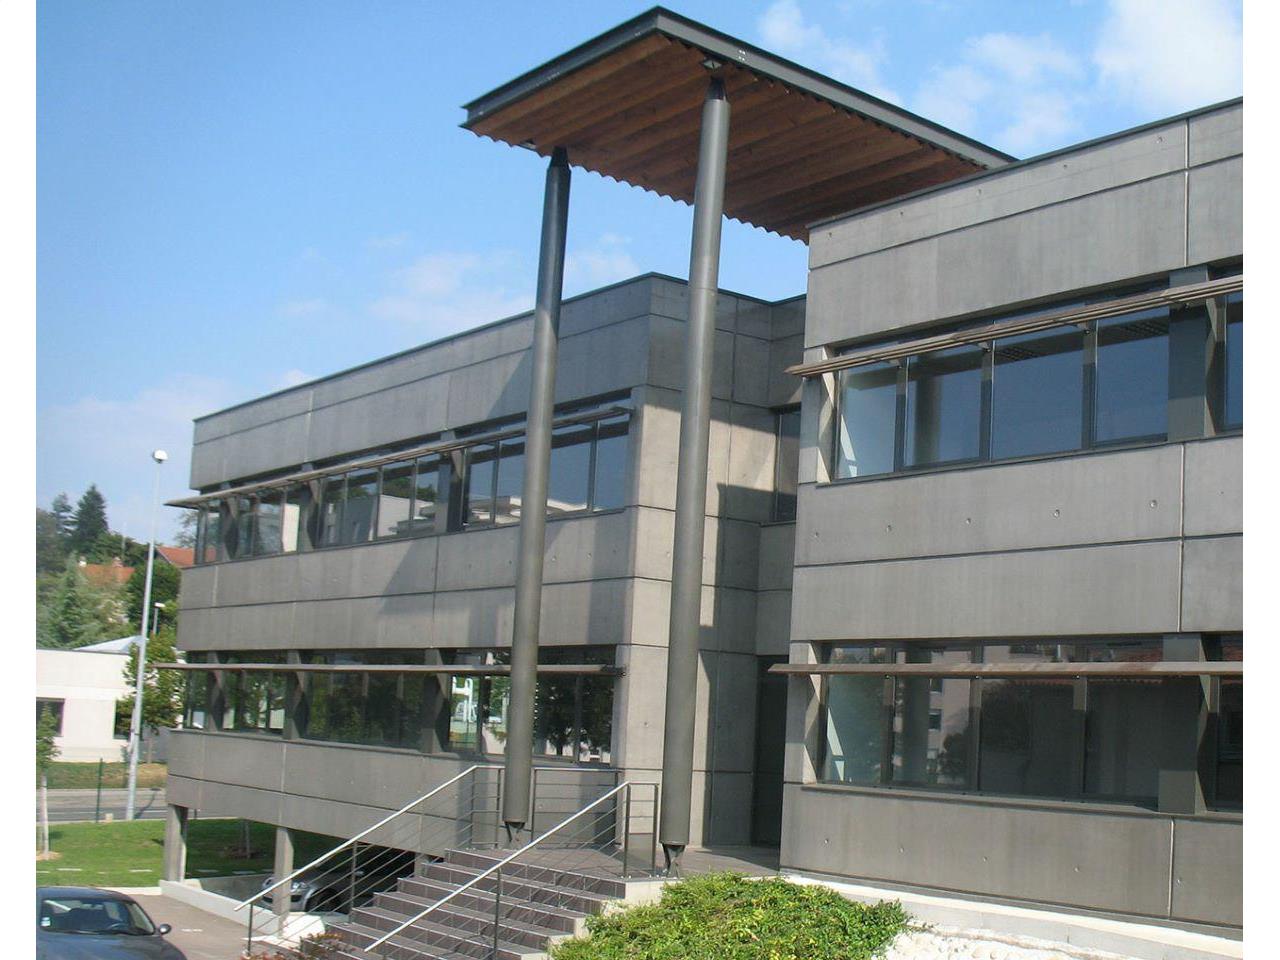 Location bureau Sainte-Foy-lès-Lyon 715m²